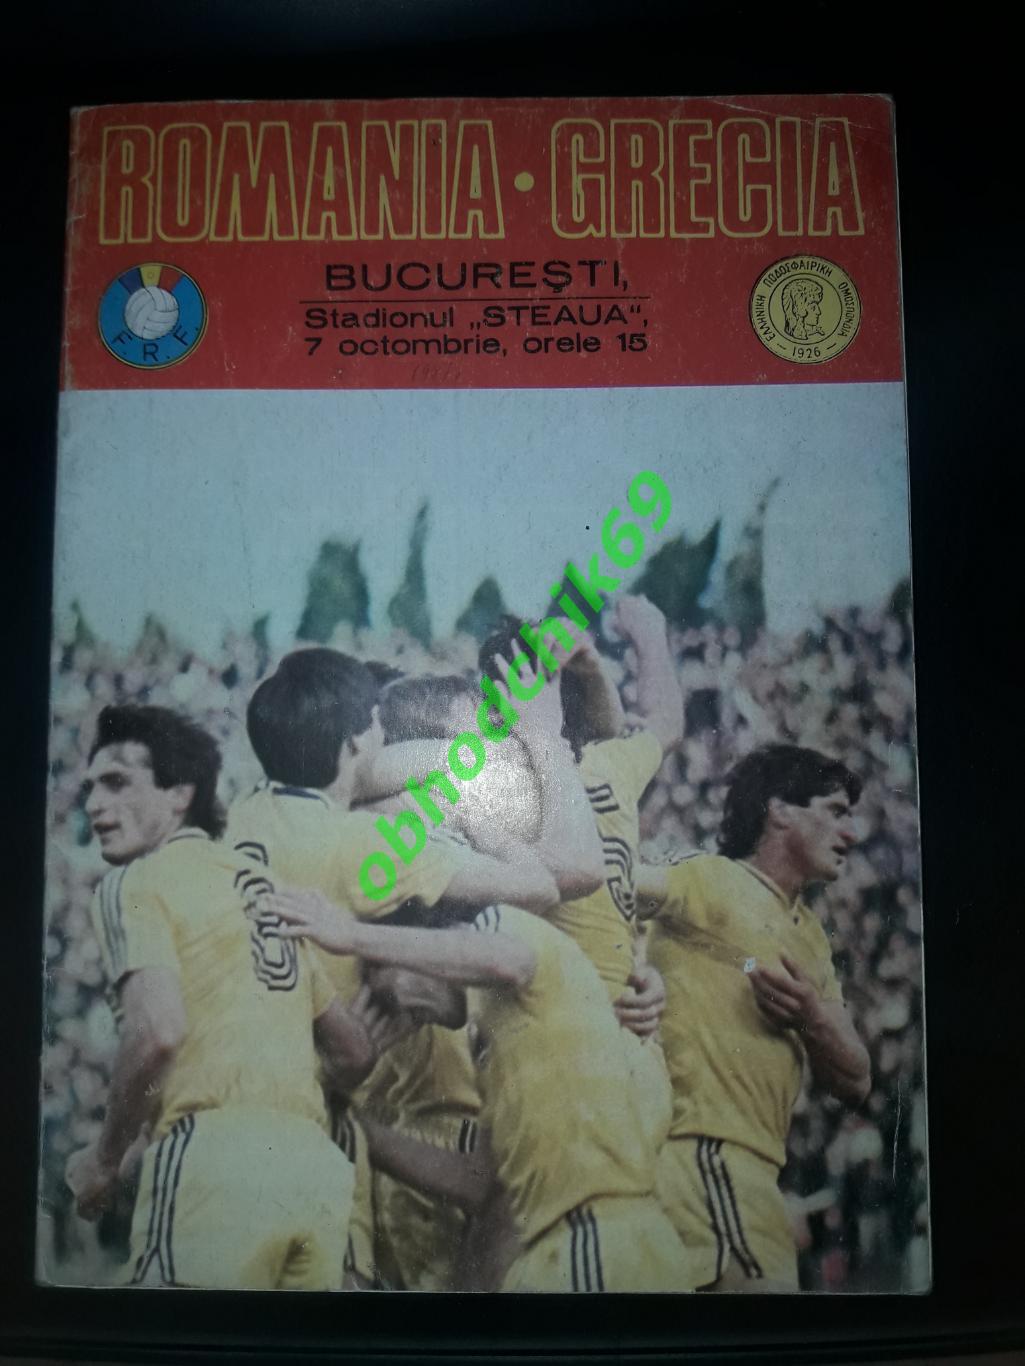 Румыния -Греция _ сборная 07 10 1987 отбор_Чемпионат Европы 1988 (фото Румыния)